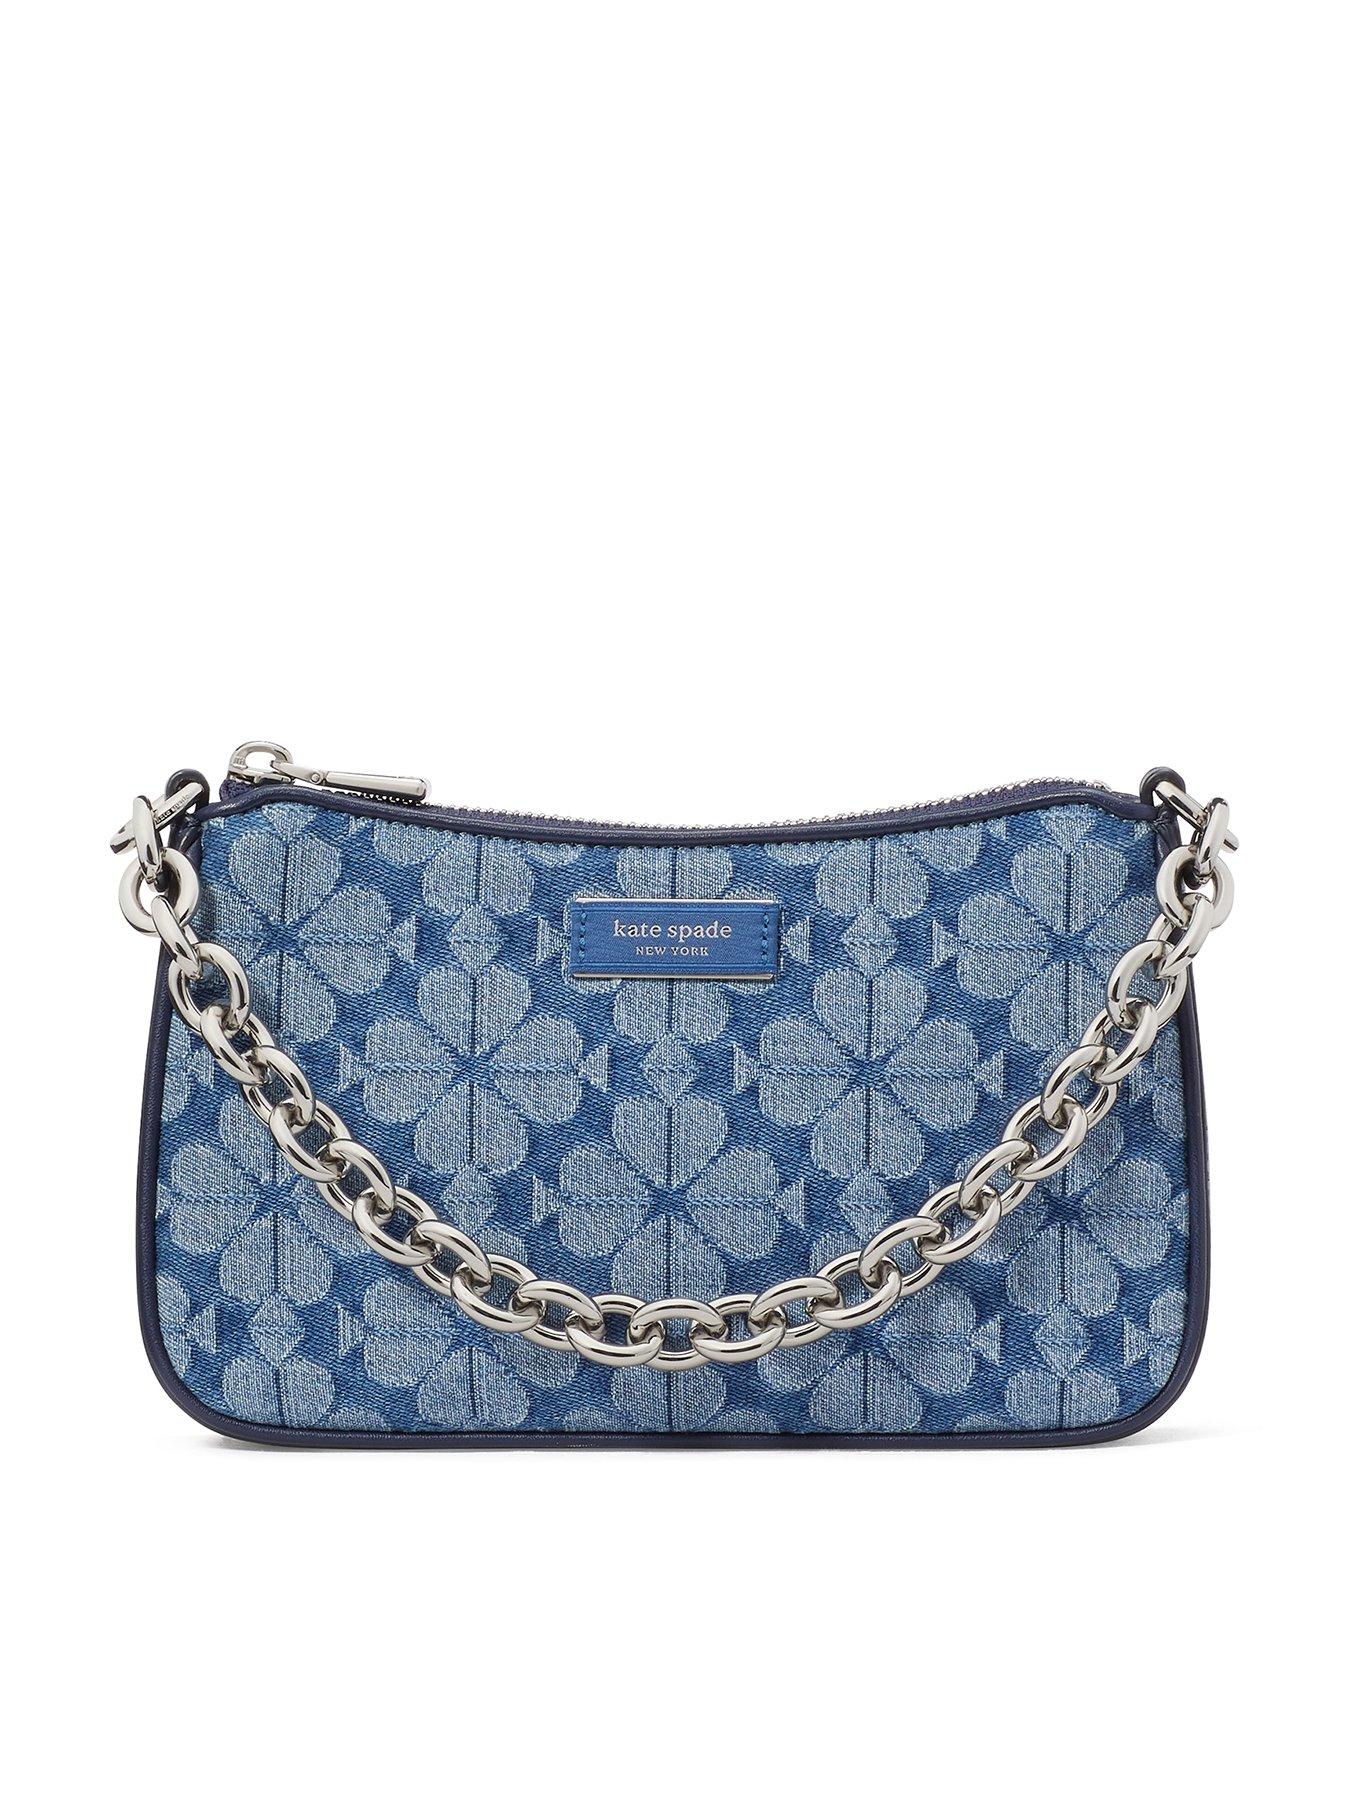 Kate Spade Designer Handbags | Mercari